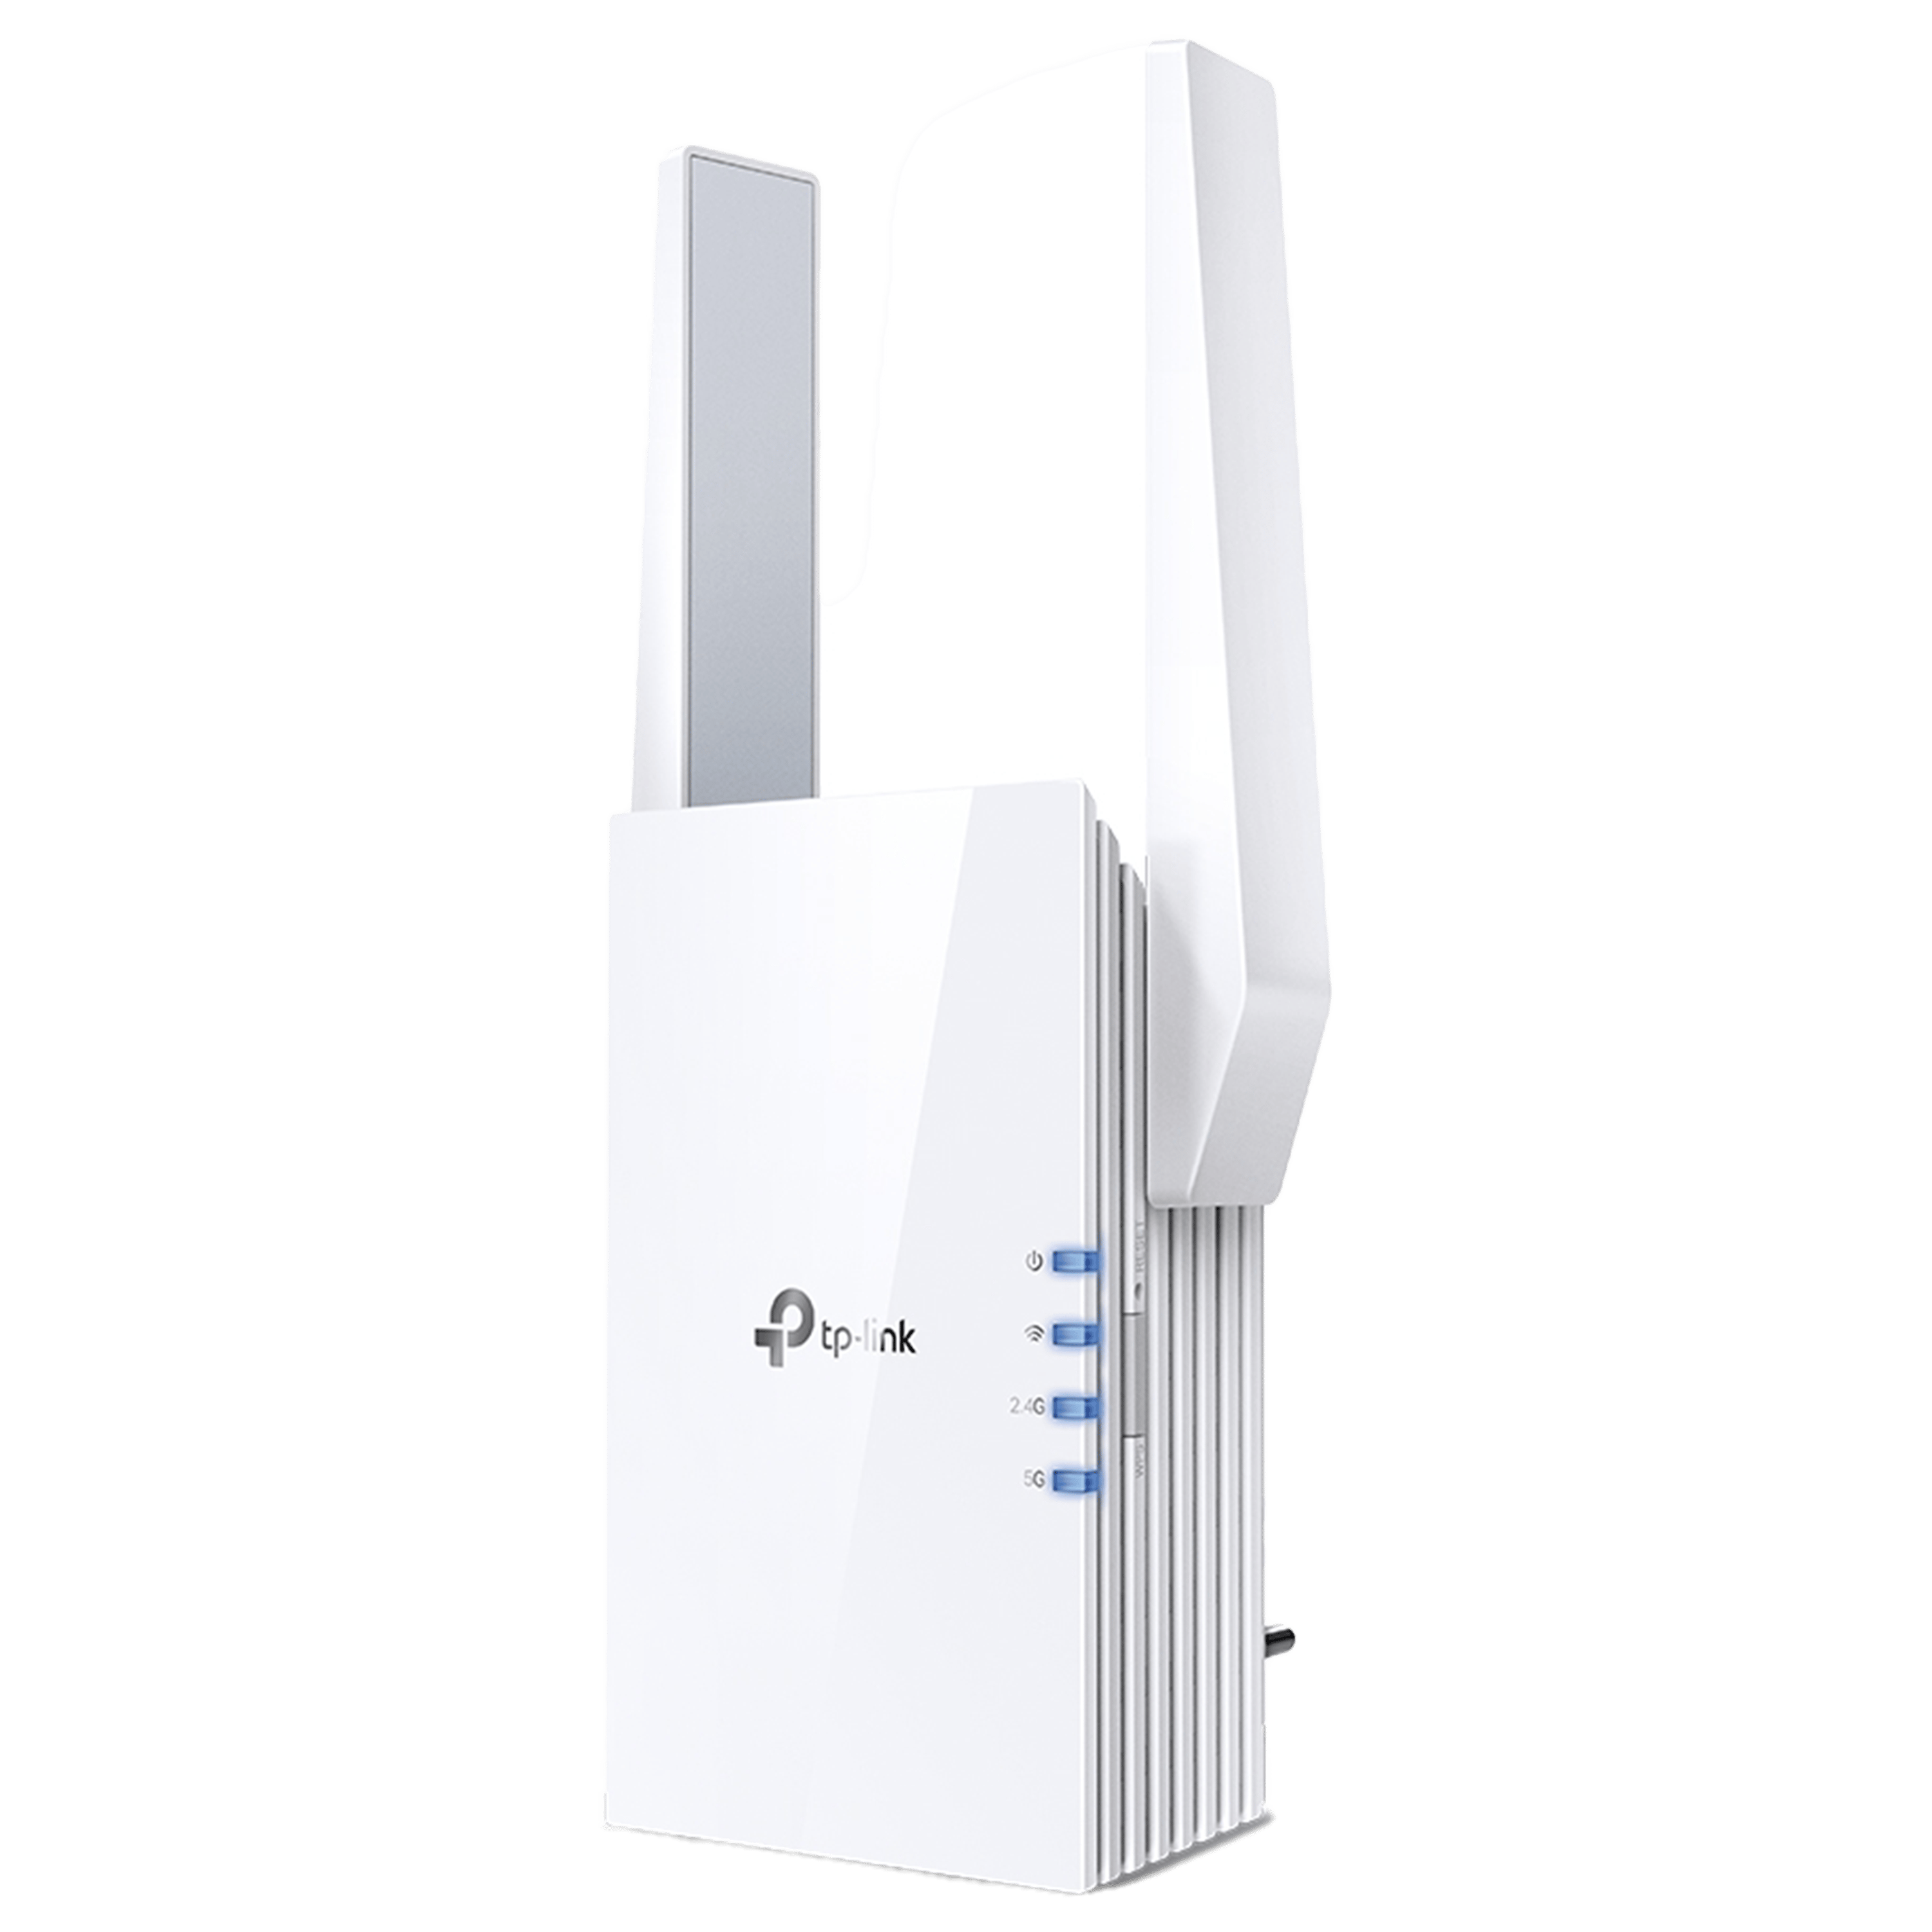 جهاز توسعة نطاق الانترنت TP-Link RE505X AX1500 Wi-Fi 6 Range Extender - בلون أبيض ضمان ثلاث سنوات من المستورد الرسمي